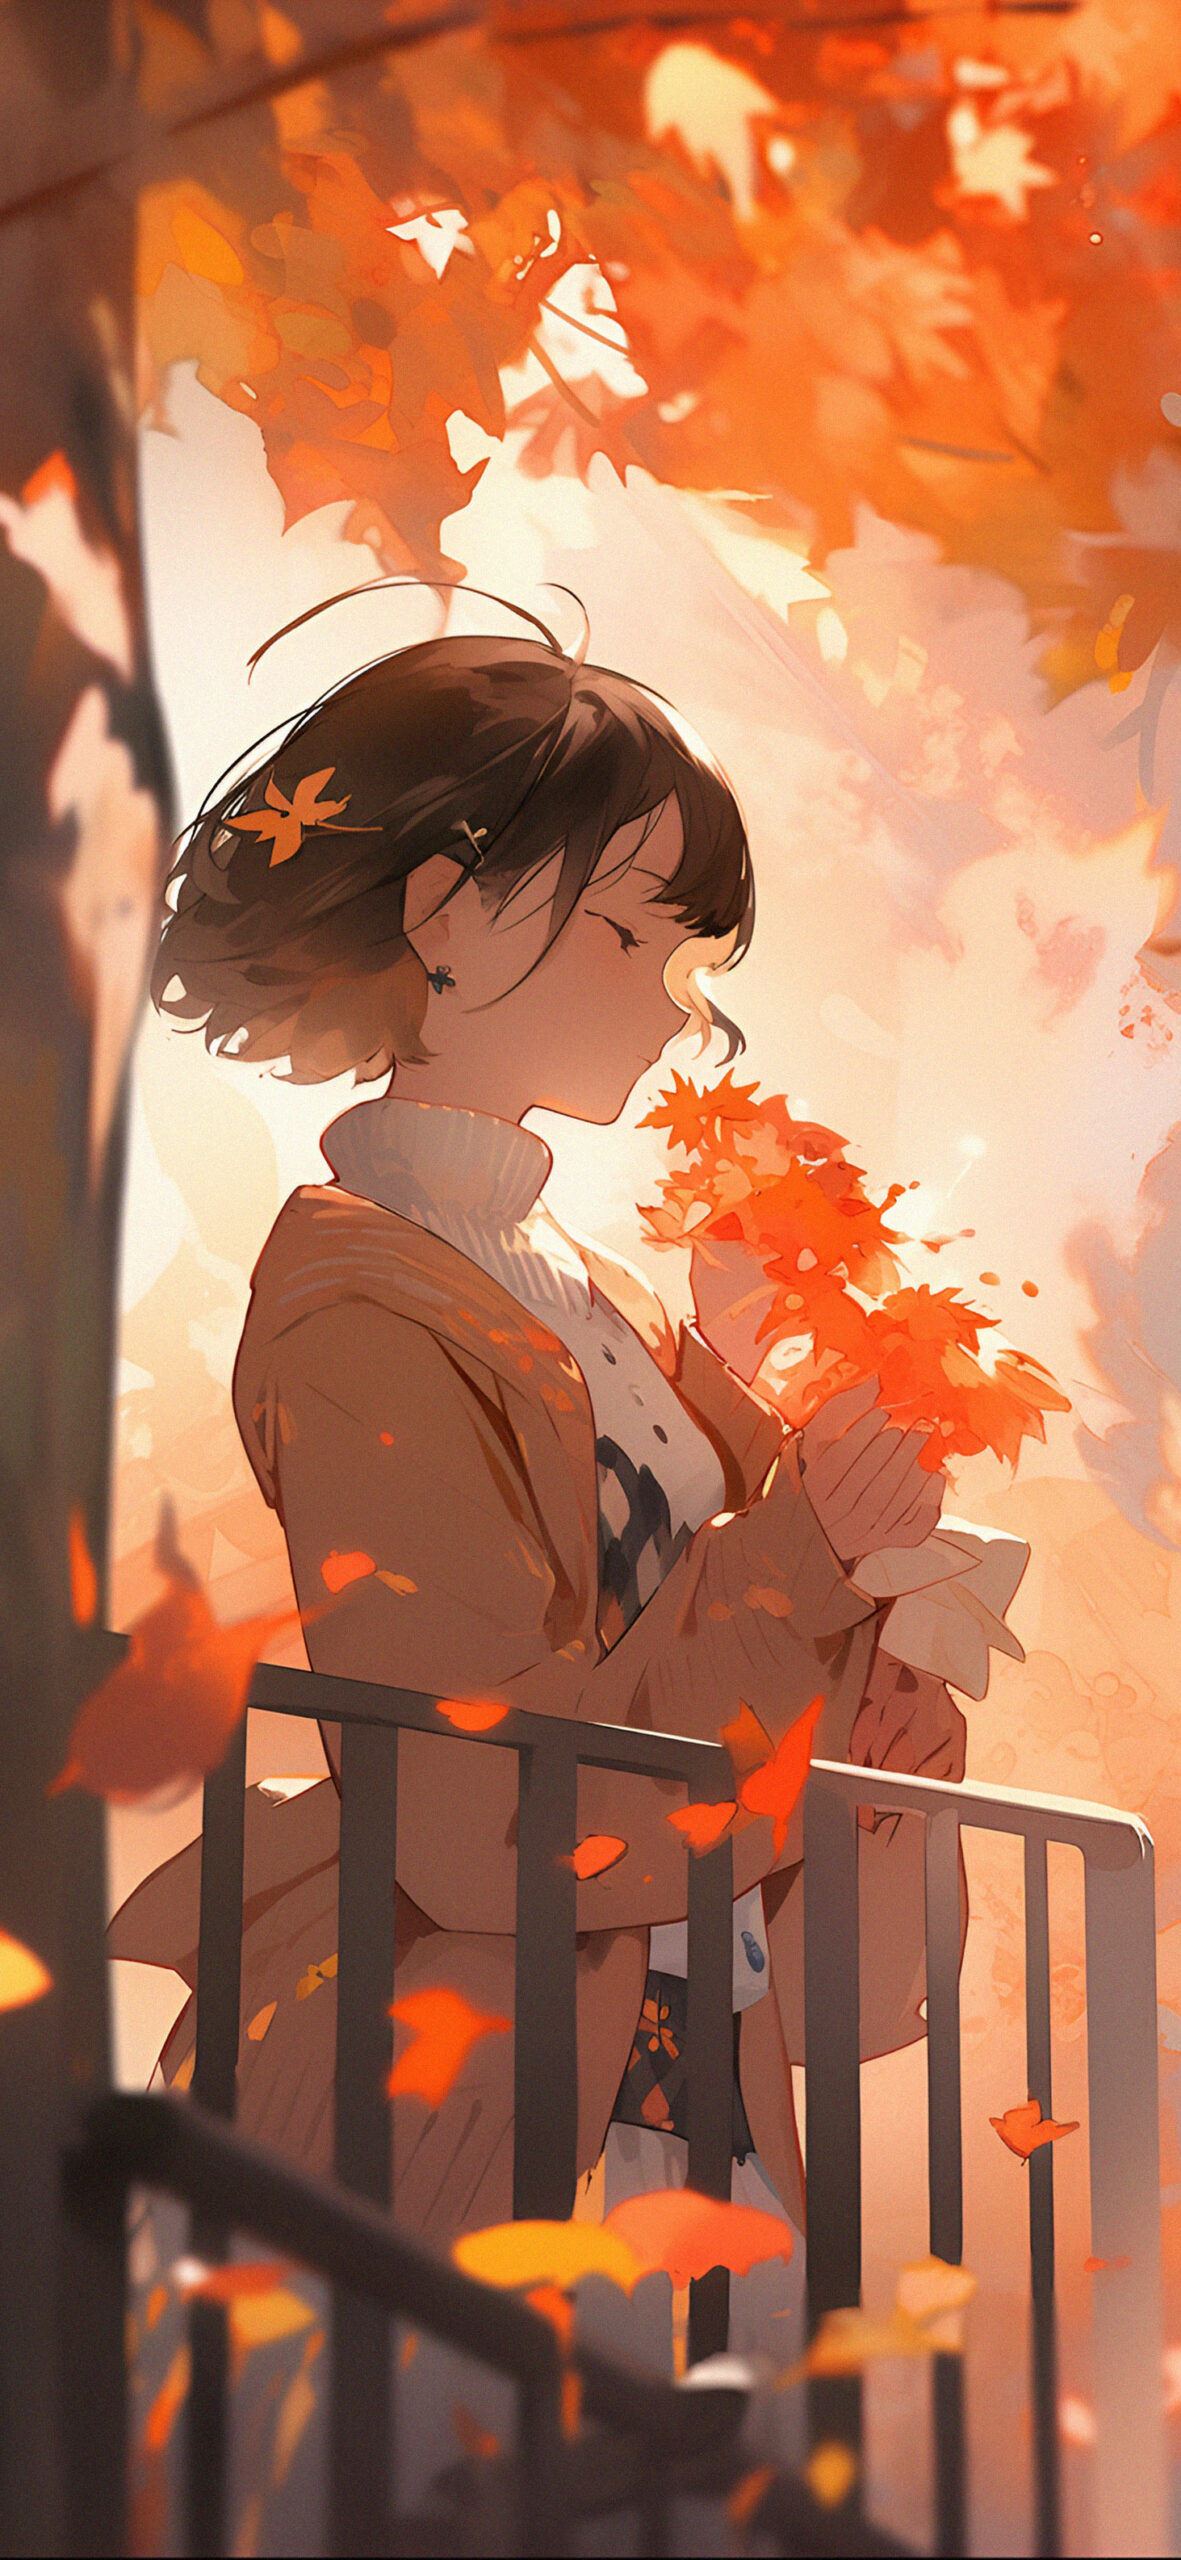 Anime Autumn Background by artgrazer on DeviantArt